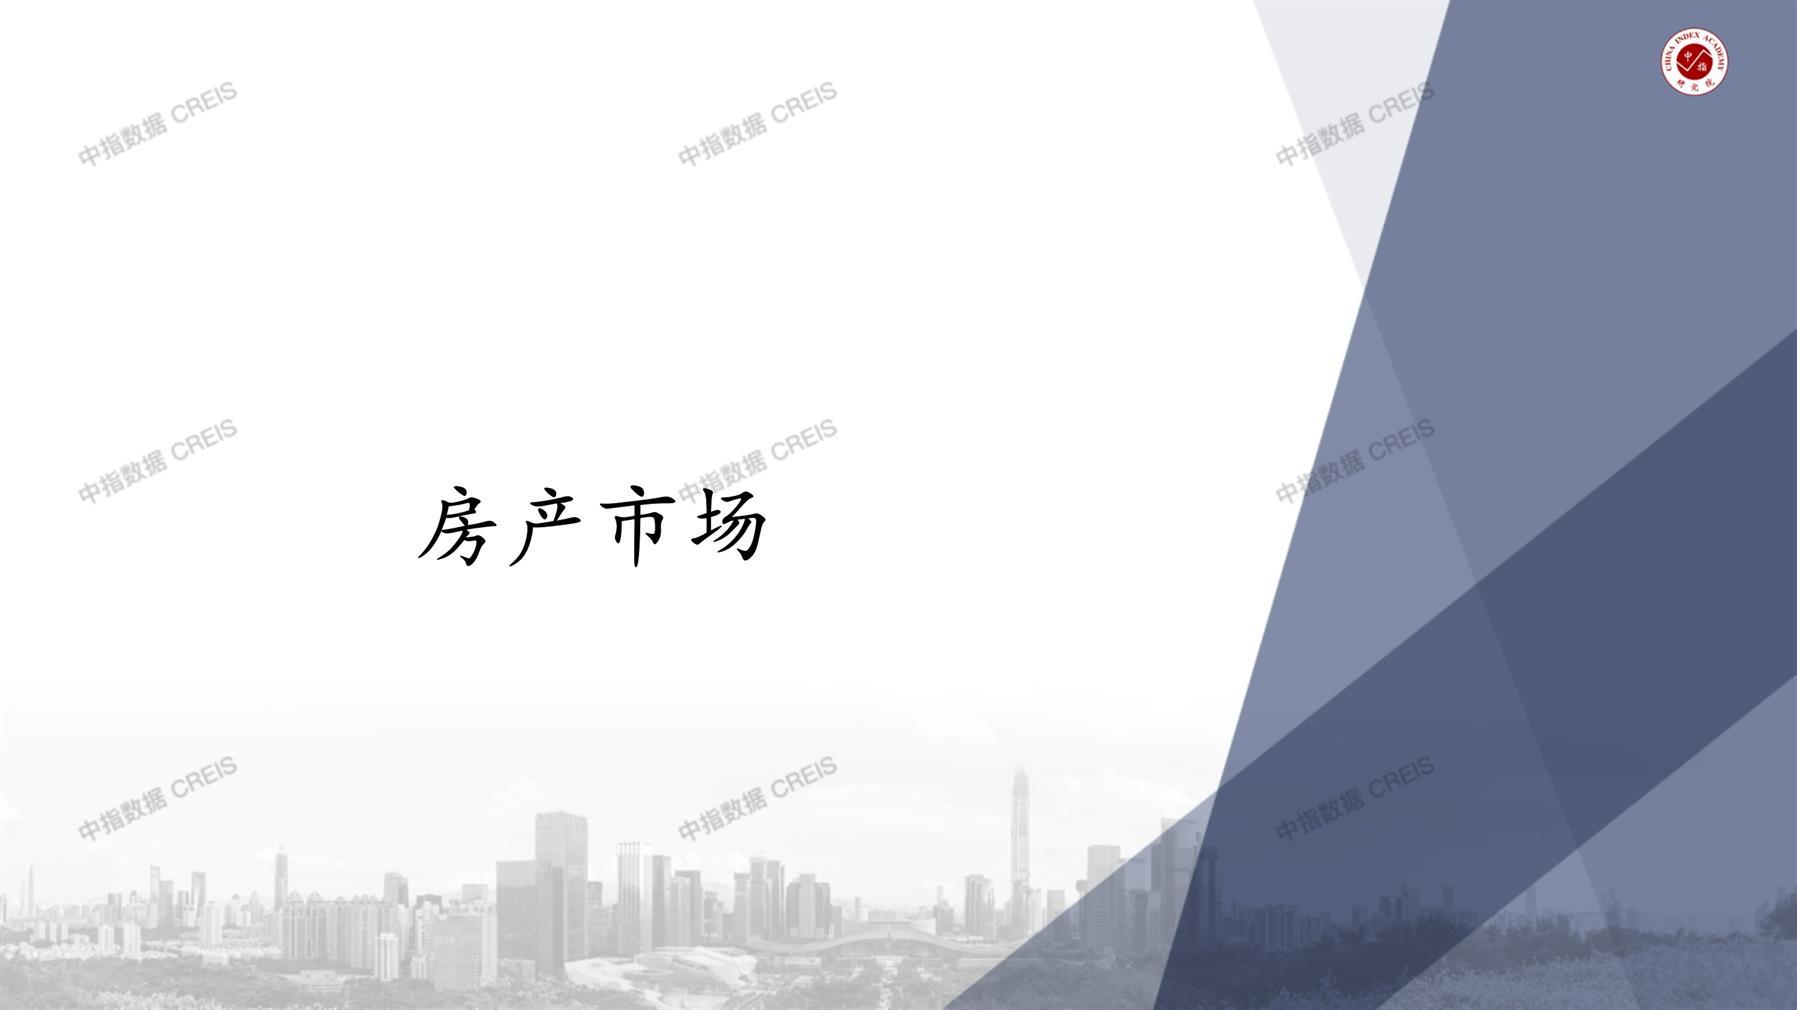 上海、上海房地产市场、商品房销售、住宅成交、土地市场、地块面积、上海写字楼